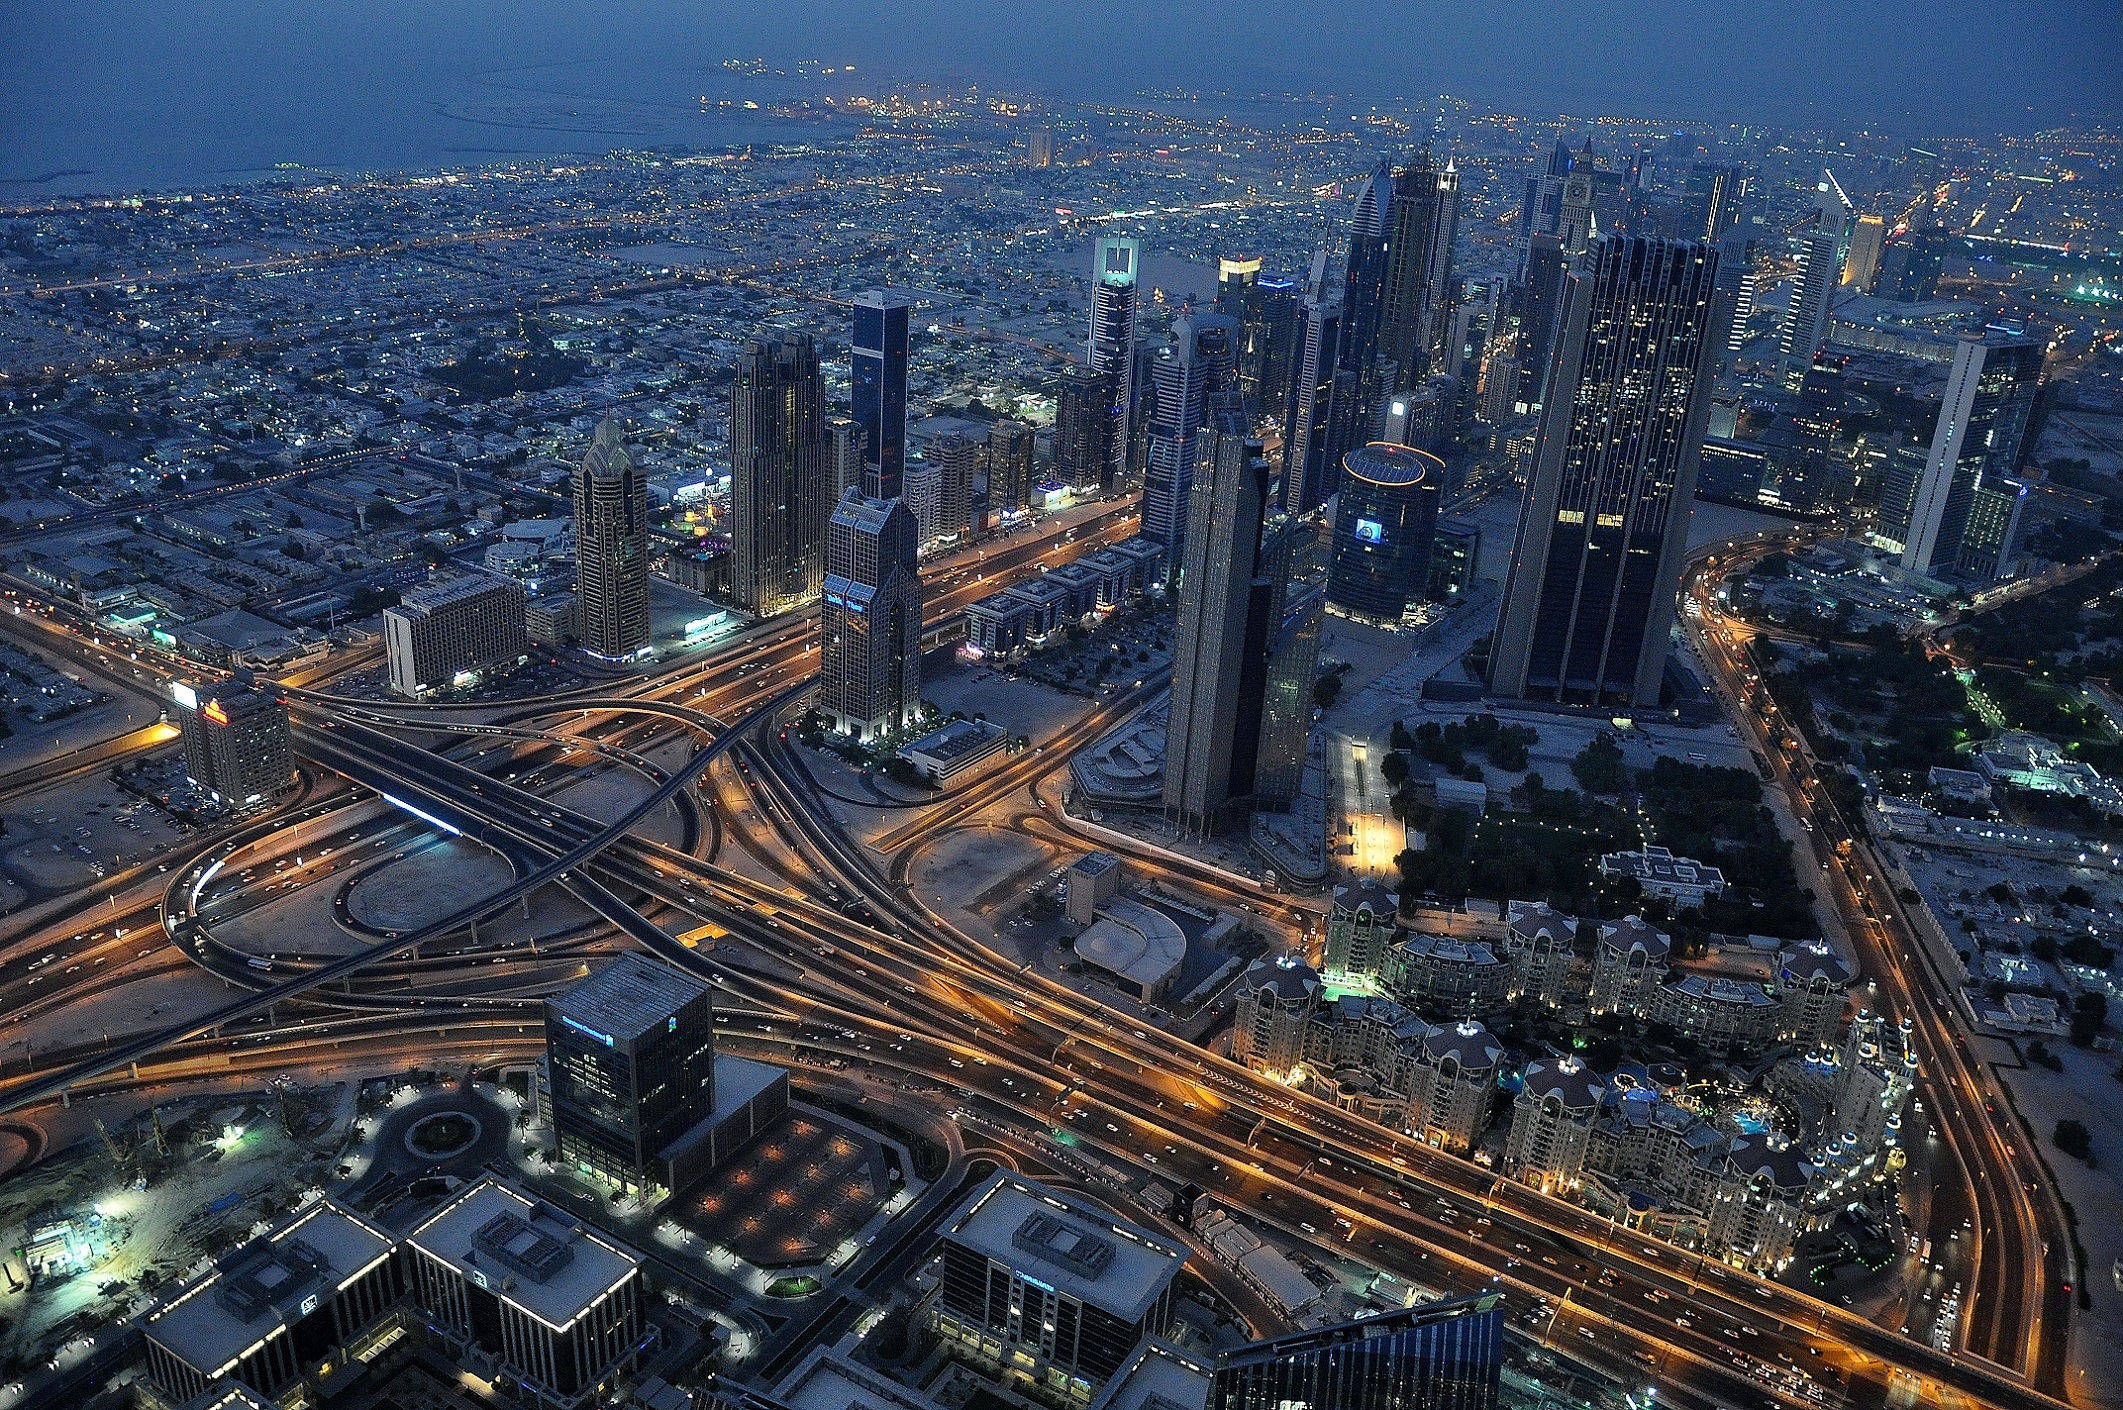 لماذا احتمال حدوث زلازل قليل جدًا في الإمارات العربية المتحدة؟ 3